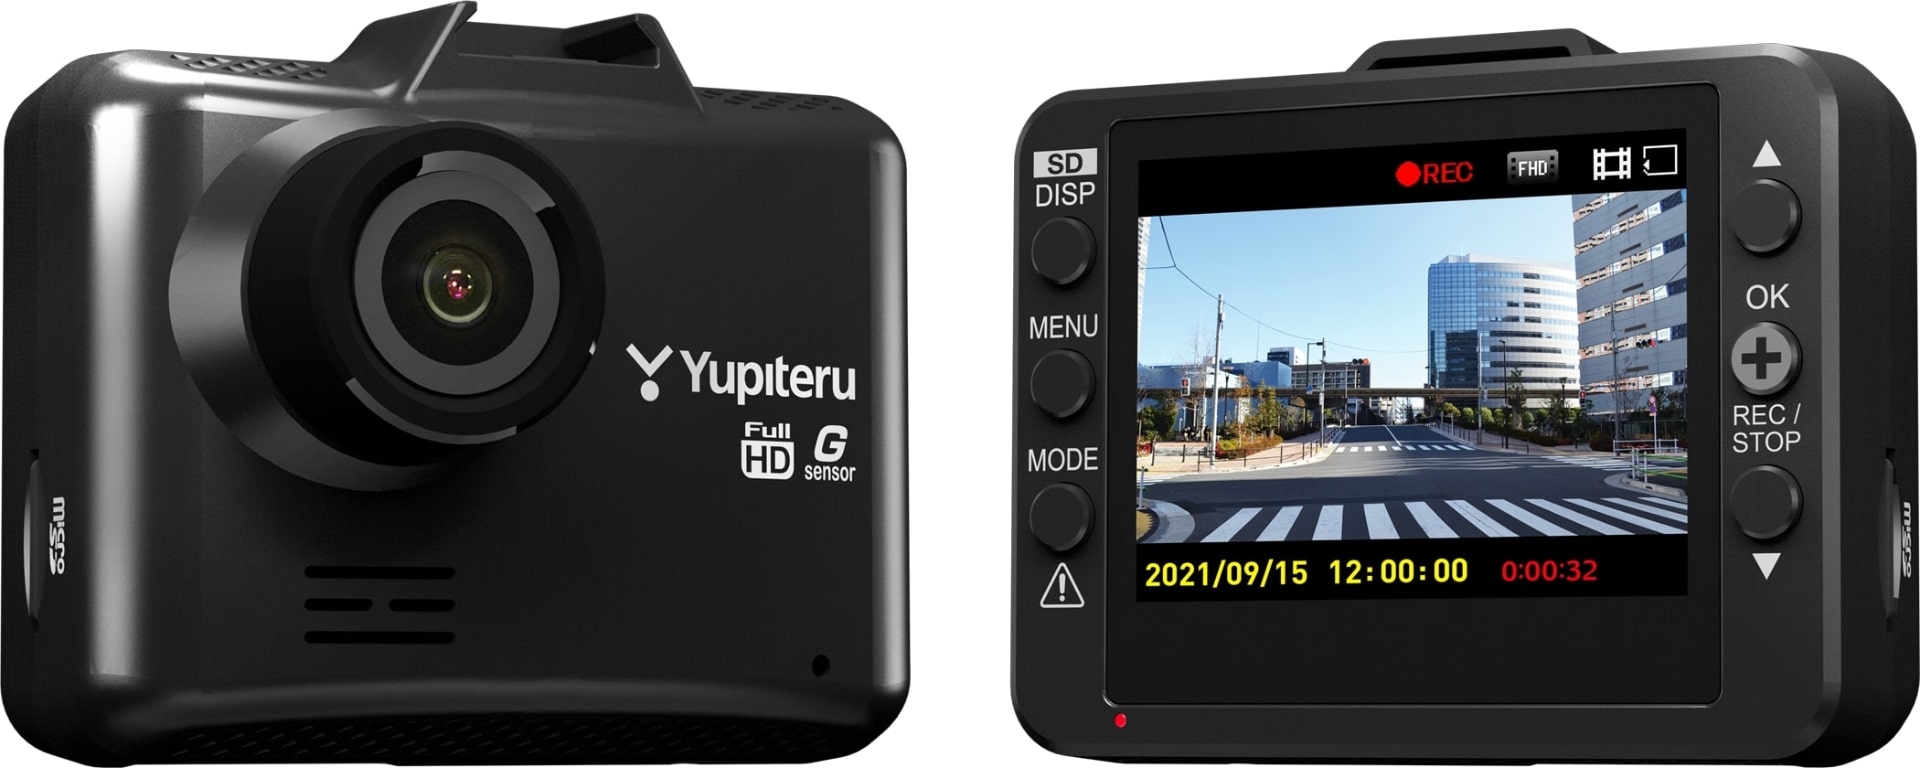 ユピテル ドライブレコーダー新商品「DRY-ST1200c」発売 厳選機能で 